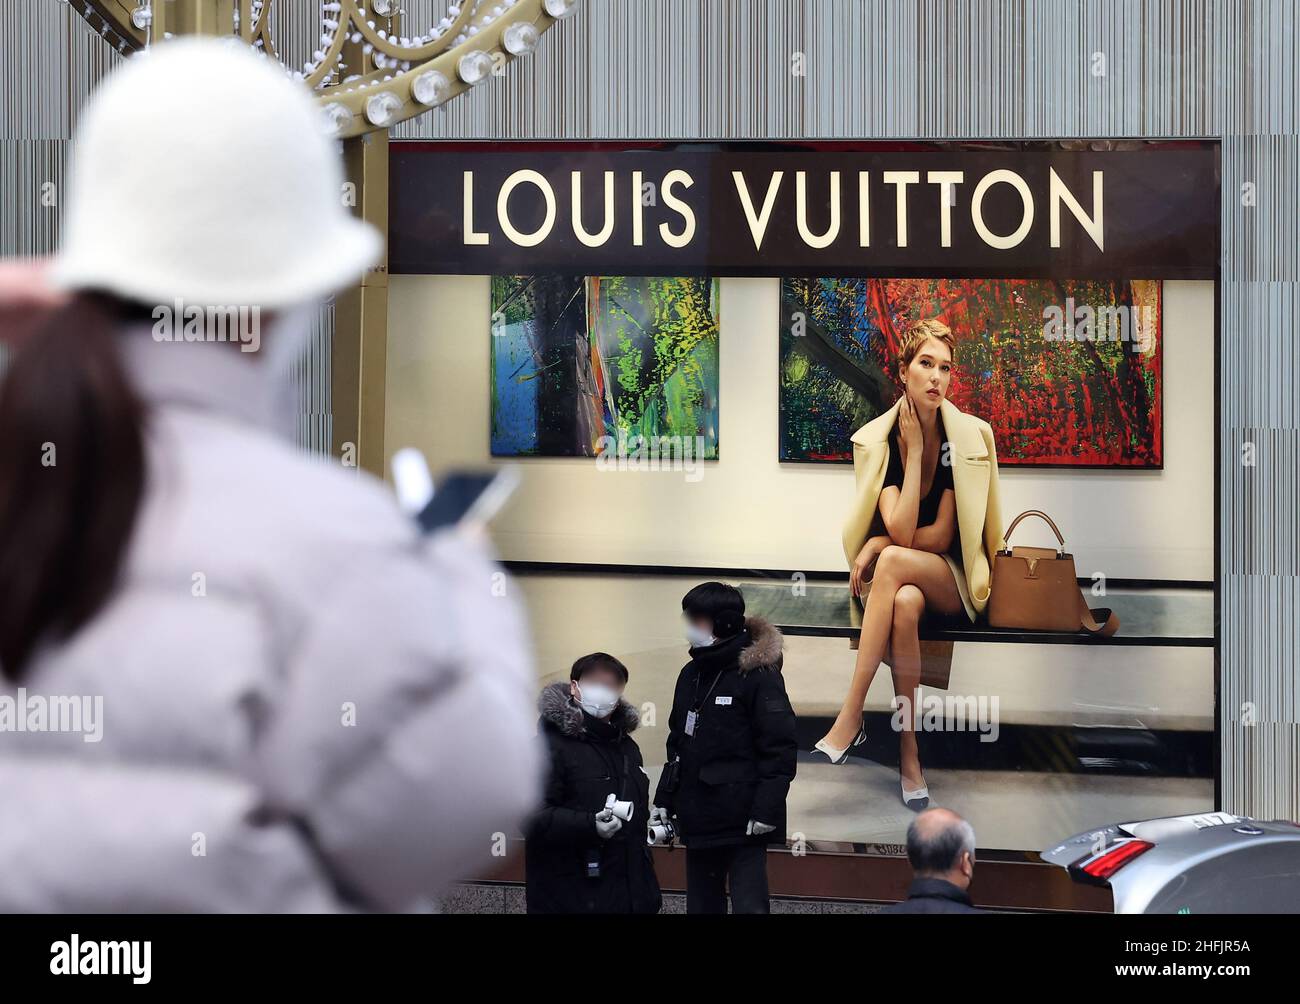 Louis Vuitton to shut downtown duty-free shops in Korea